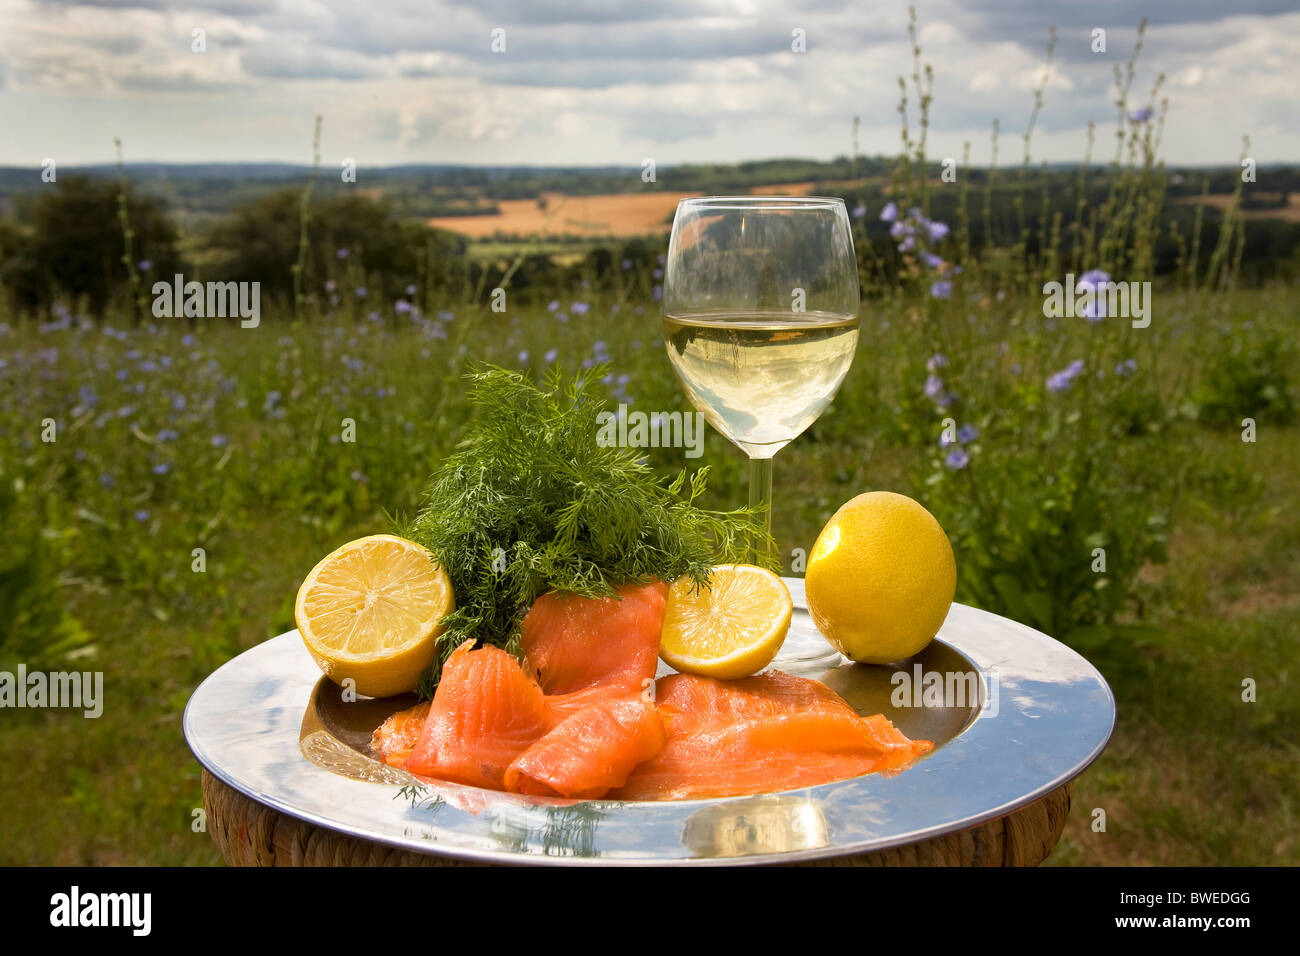 Délicieux saumon fumé, aneth et citron avec le vin blanc sur le plateau d'argent dans la campagne d'été en paysage Kent UK Banque D'Images